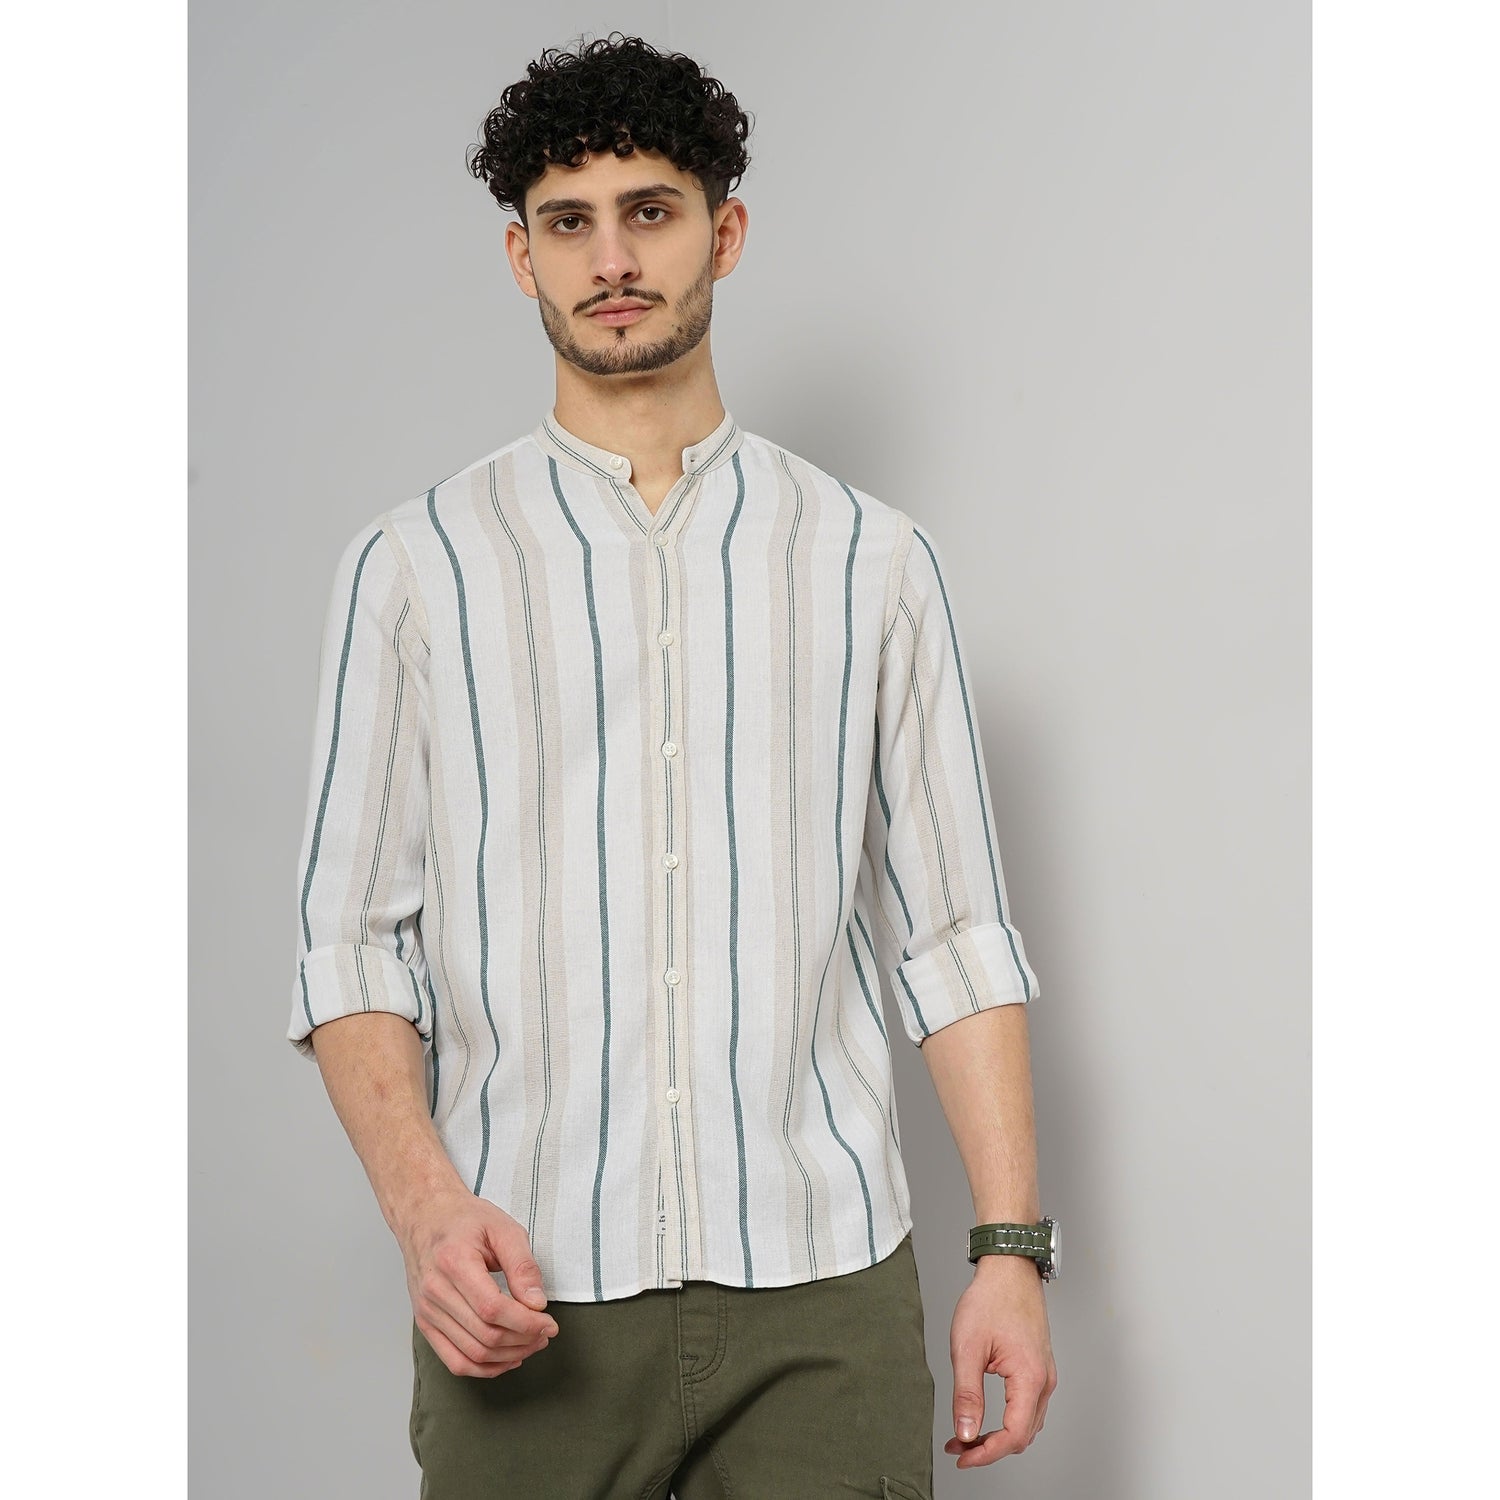 Men Blue Striped Regular Fit Cotton Linen Casual Shirt (GALINLINE)